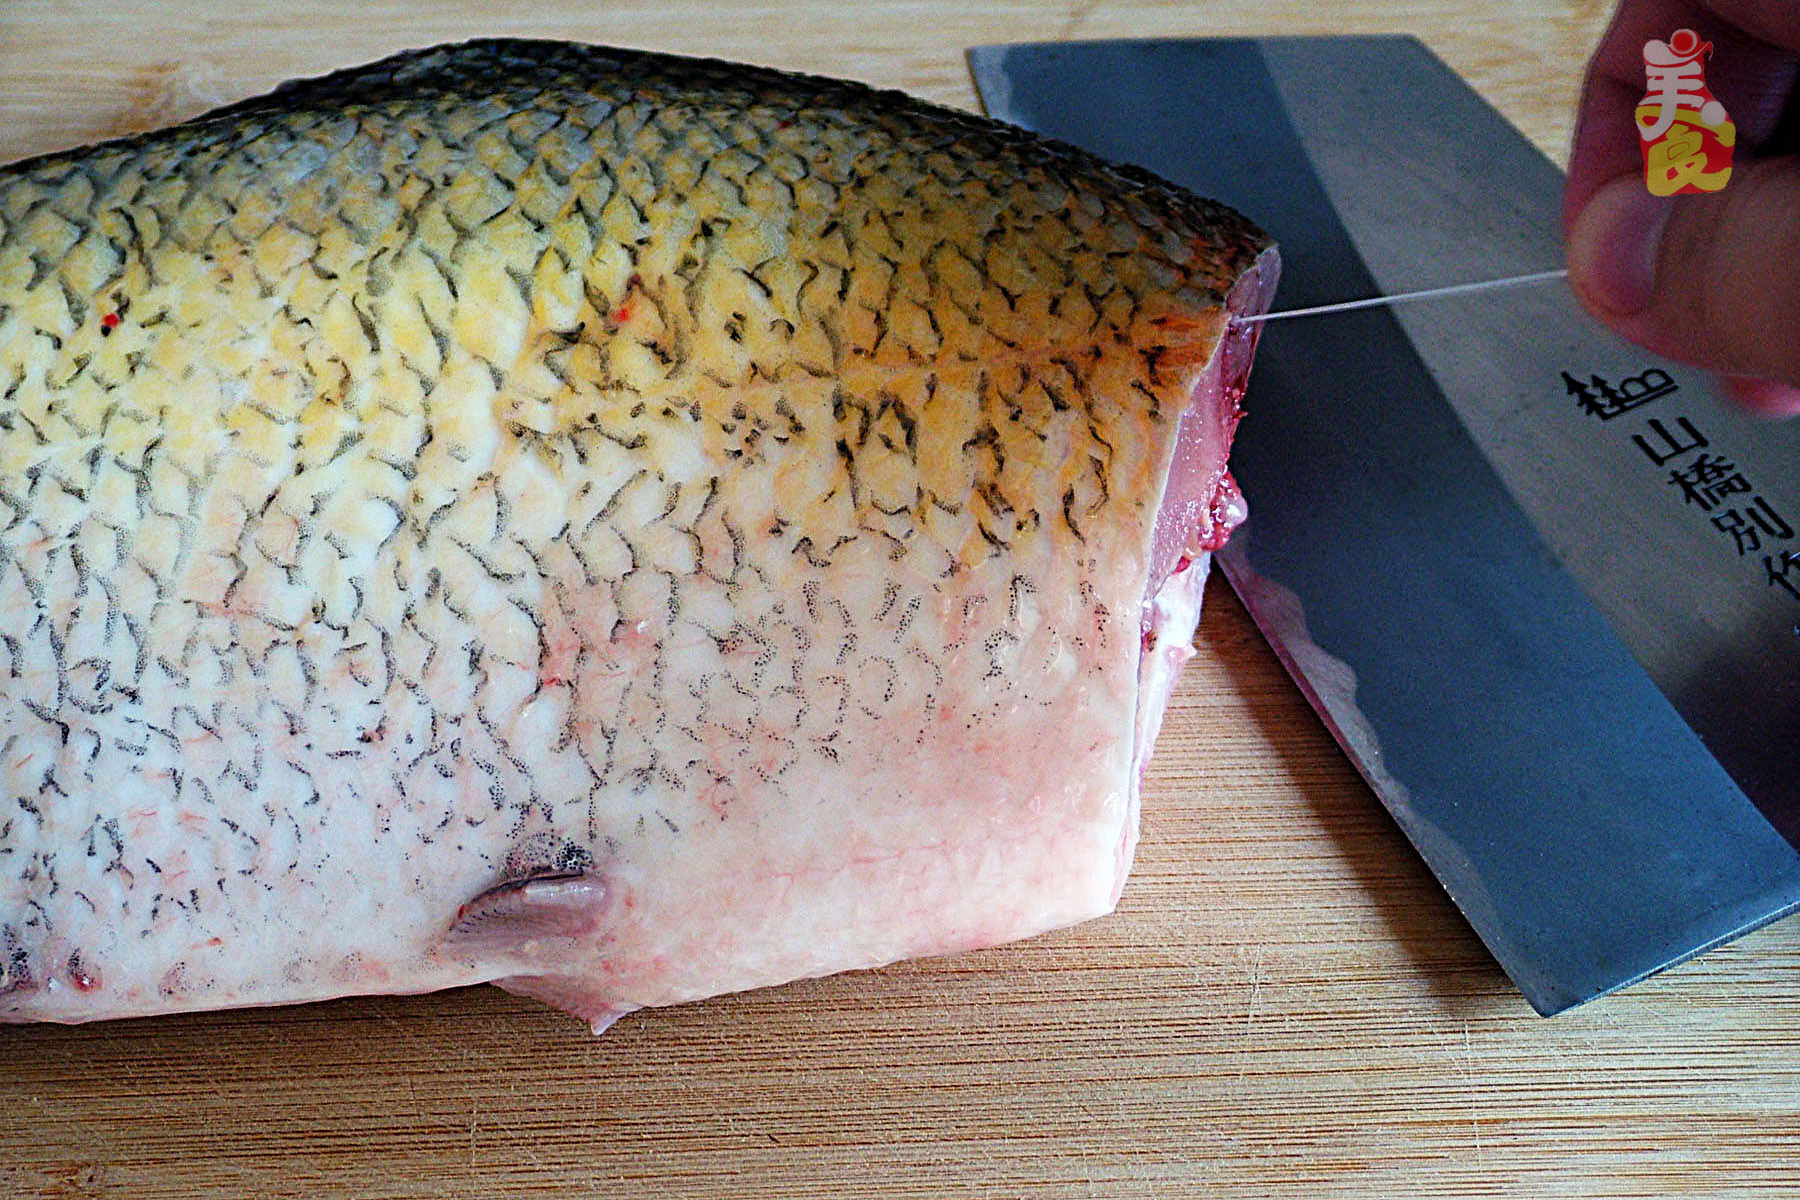 13根鱼刺的鱼叫鳊鱼,只有13根半鱼刺的鱼才是武昌鱼